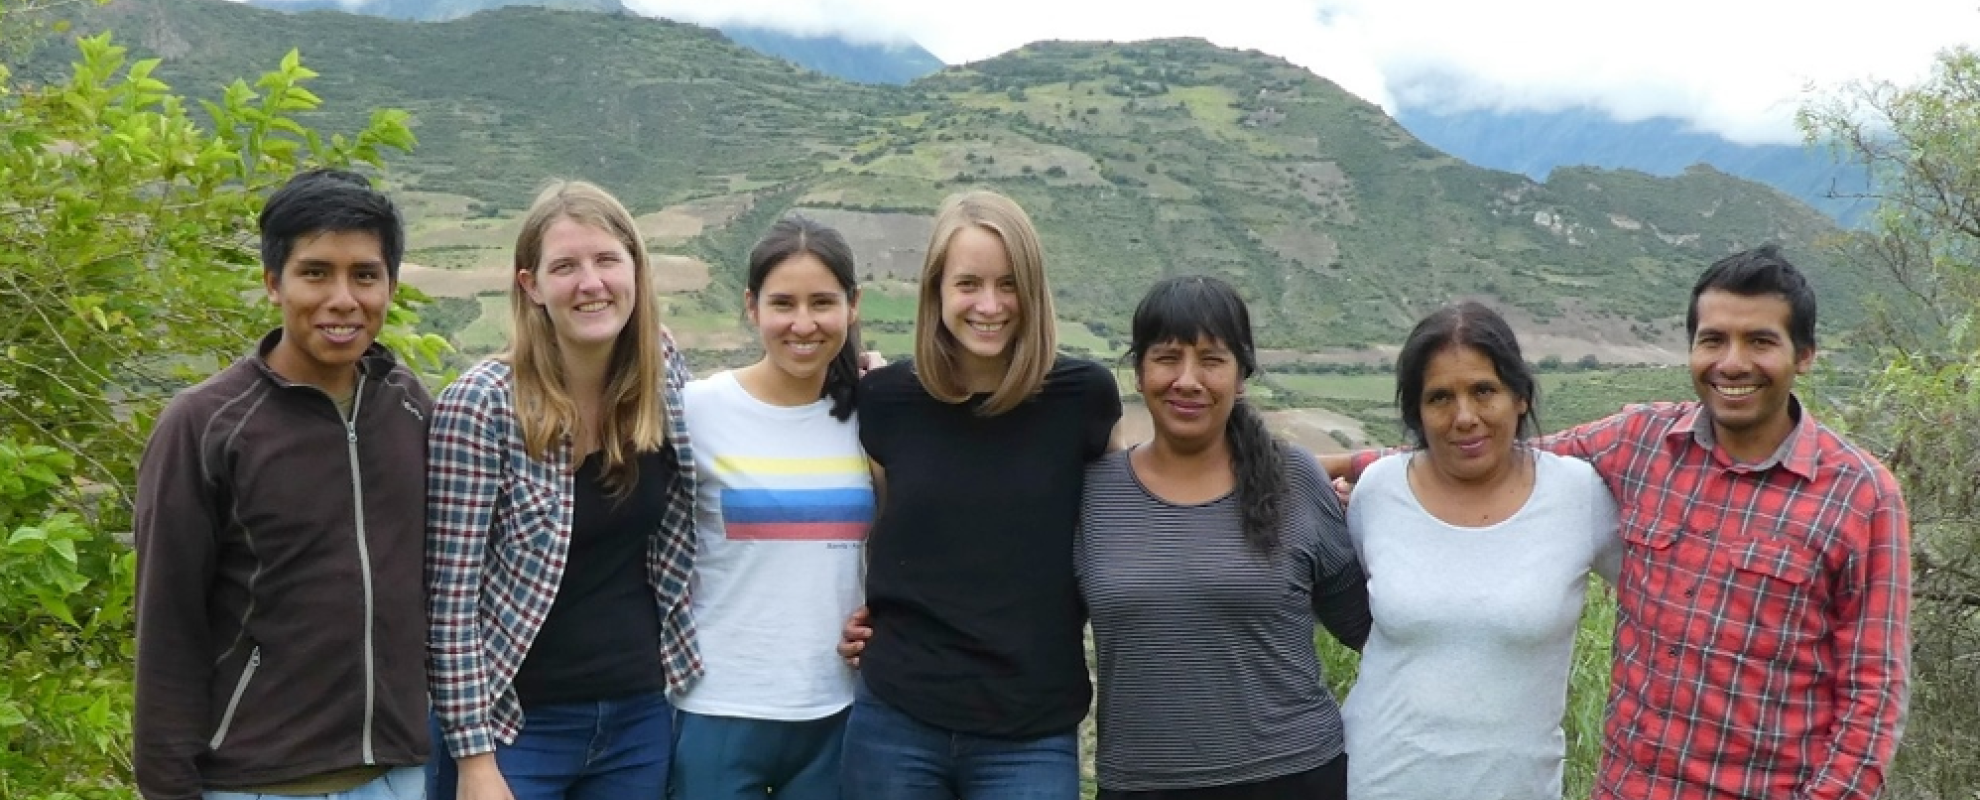 Jongeren op bezoek bij project in de Andes